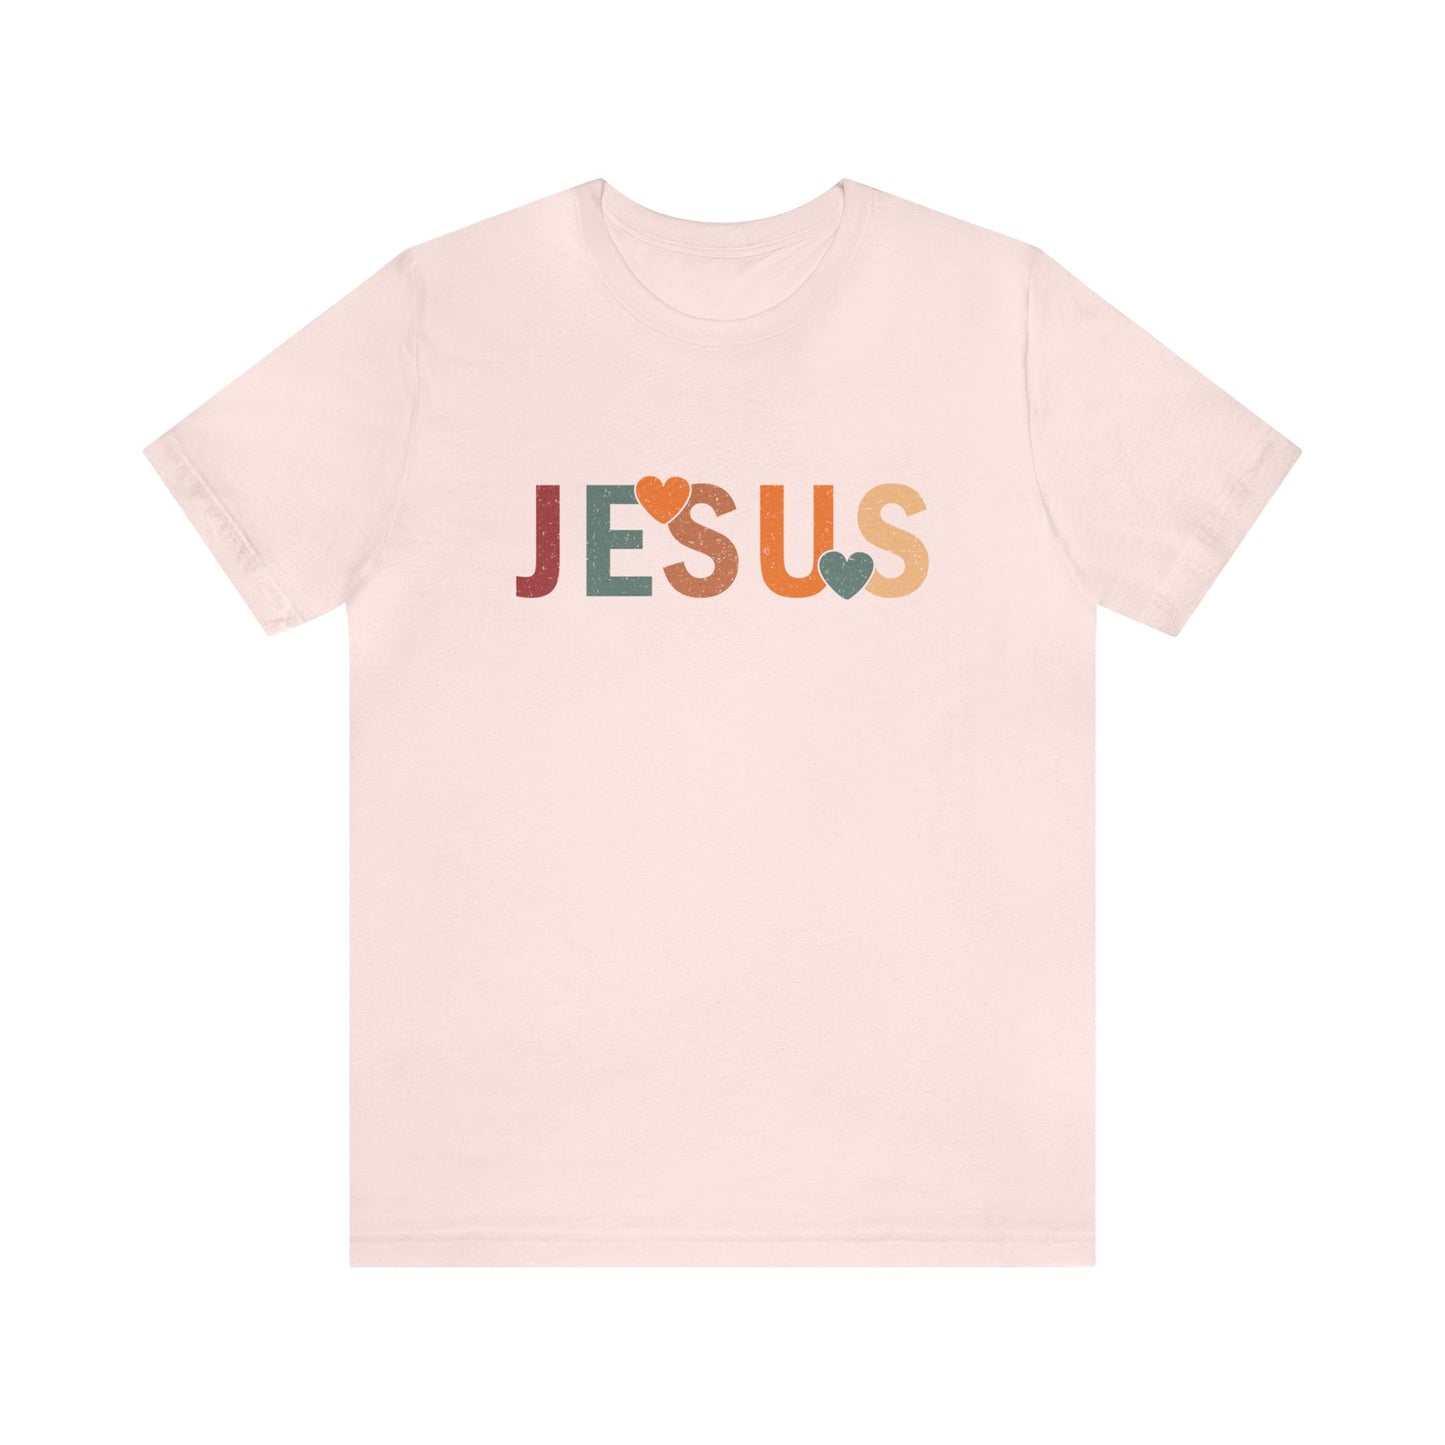 Jesus Women's Short Sleeve Tee